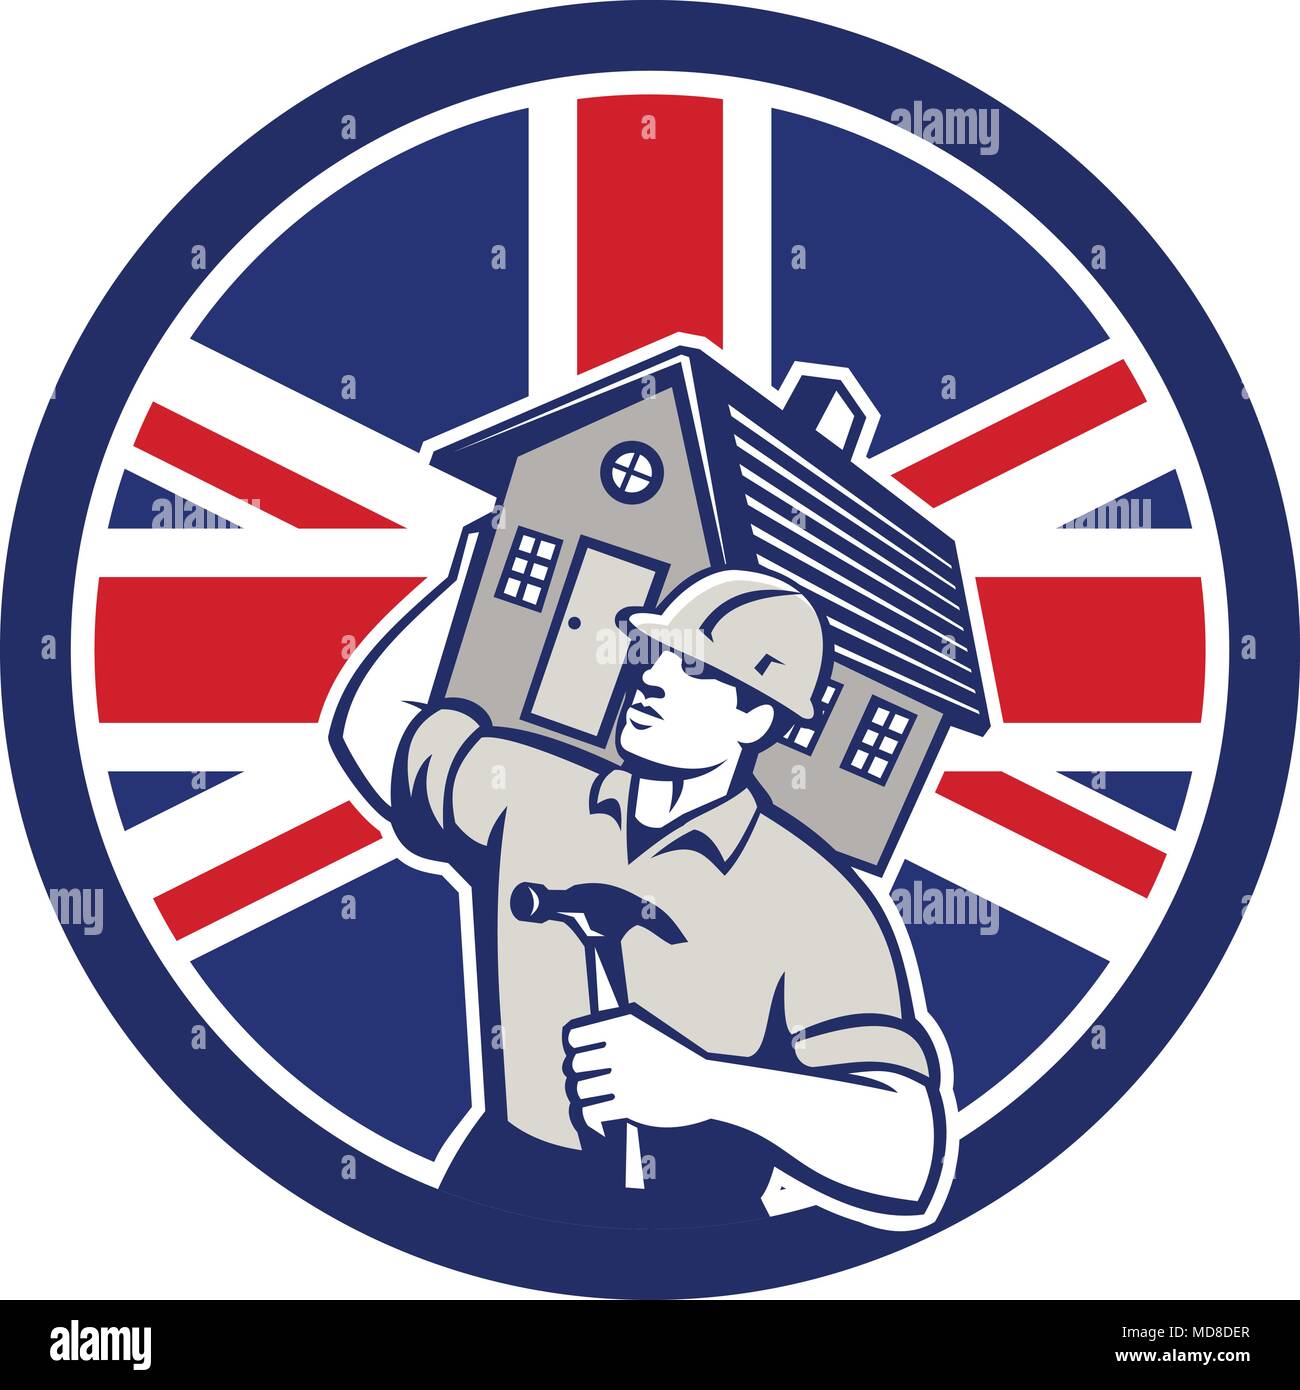 Style rétro icône illustration d'un entrepreneur en construction, constructeur, bricoleur, carpenter réalisation maison avec Royaume-uni UK, Grande-Bretagne Unio Illustration de Vecteur